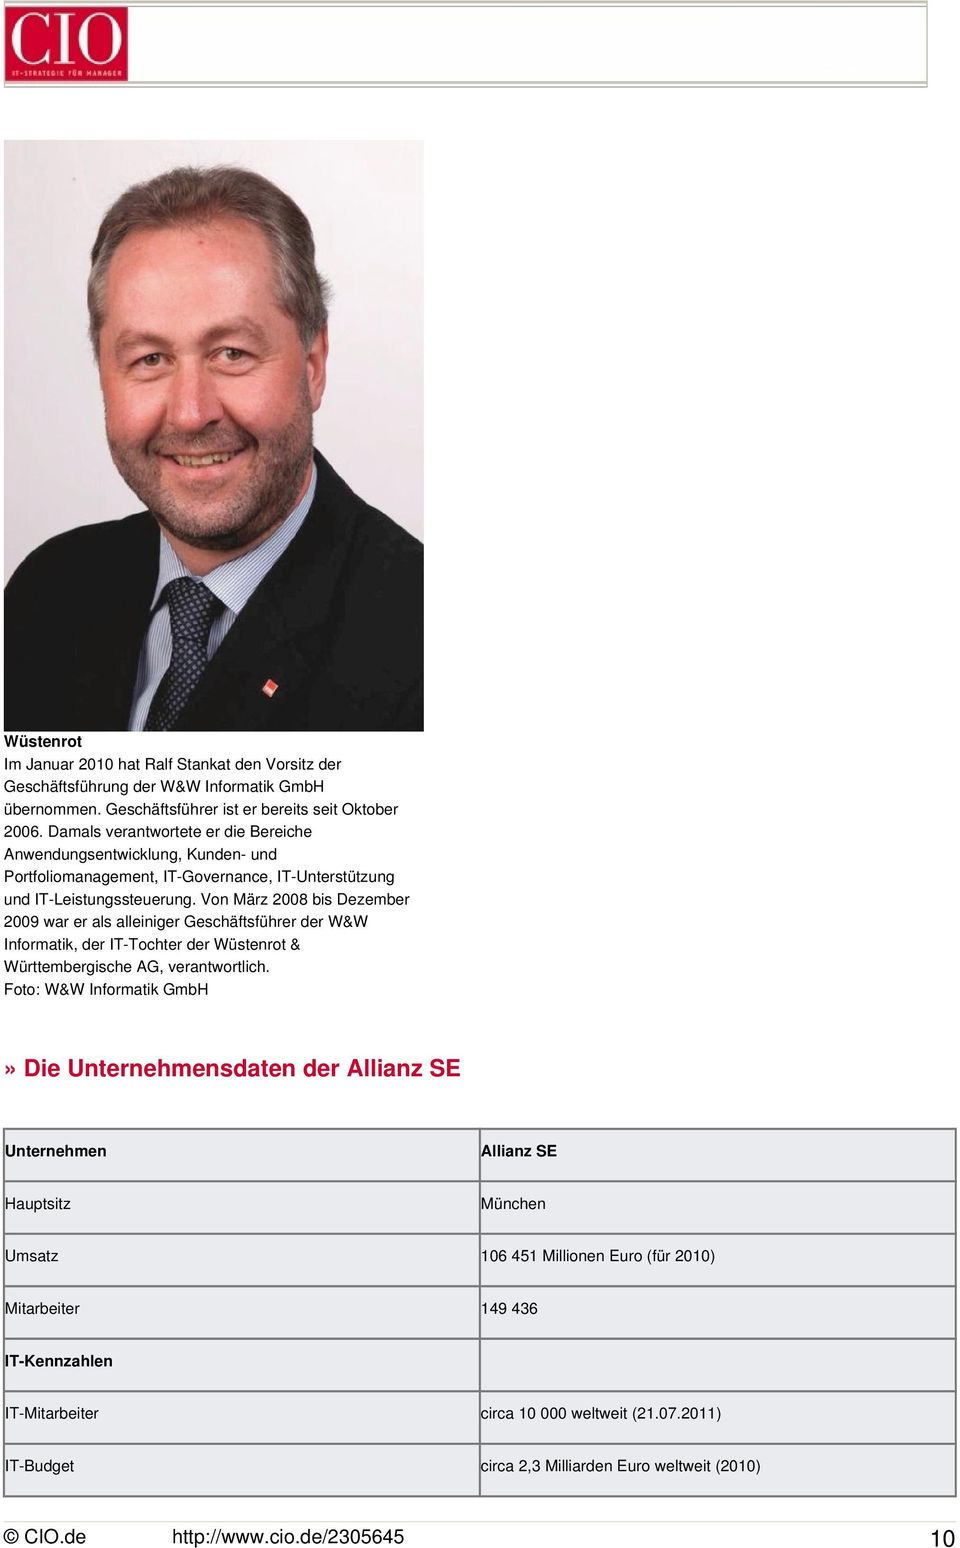 Von März 2008 bis Dezember 2009 war er als alleiniger Geschäftsführer der W&W Informatik, der IT-Tochter der Wüstenrot & Württembergische AG, verantwortlich.